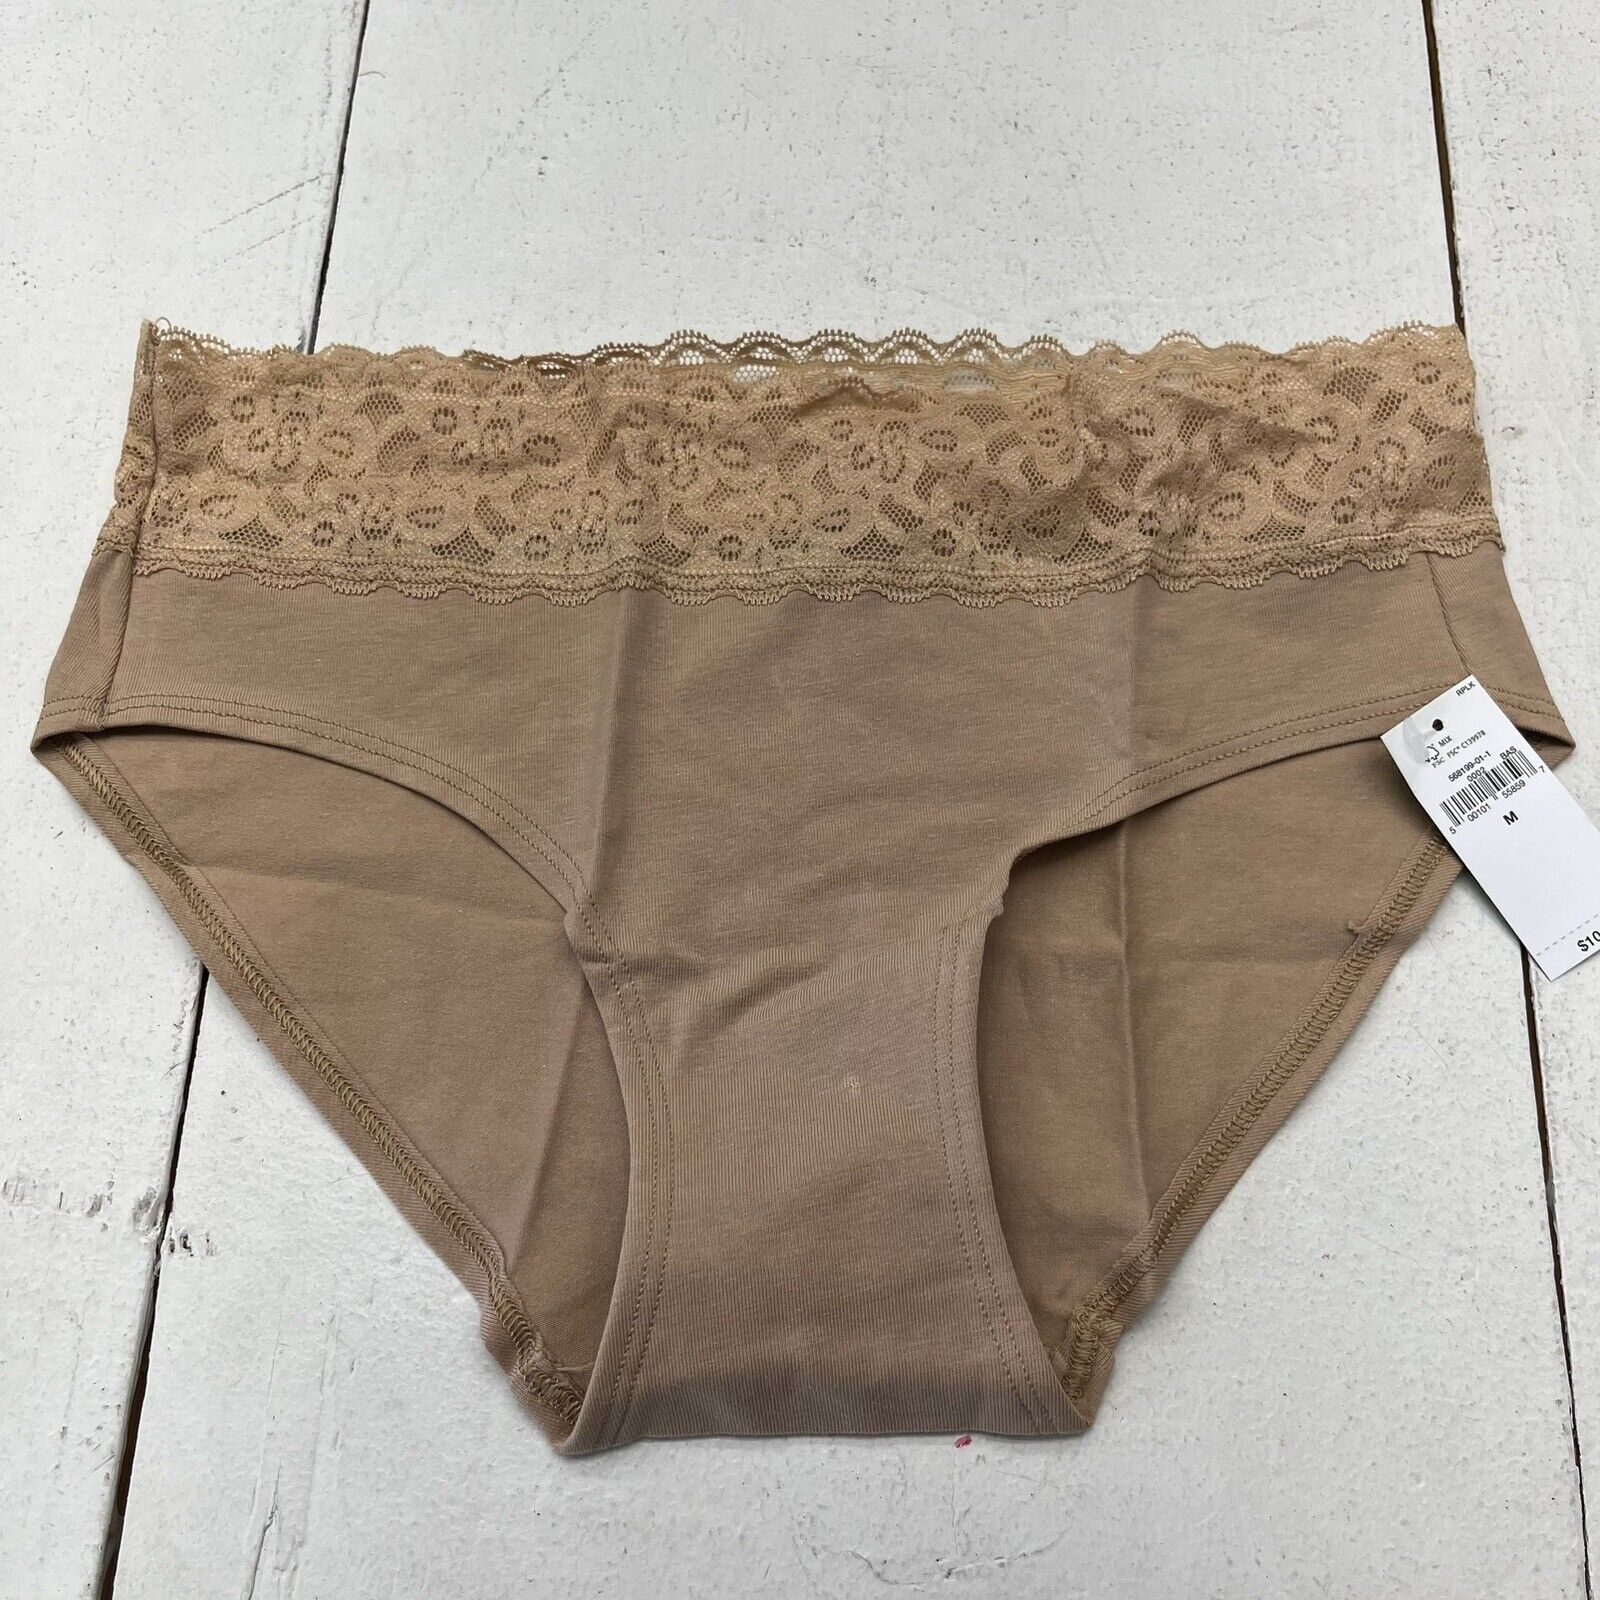 Gap Body Beige Lace Hipster Underwear Women’s Size Medium NEW